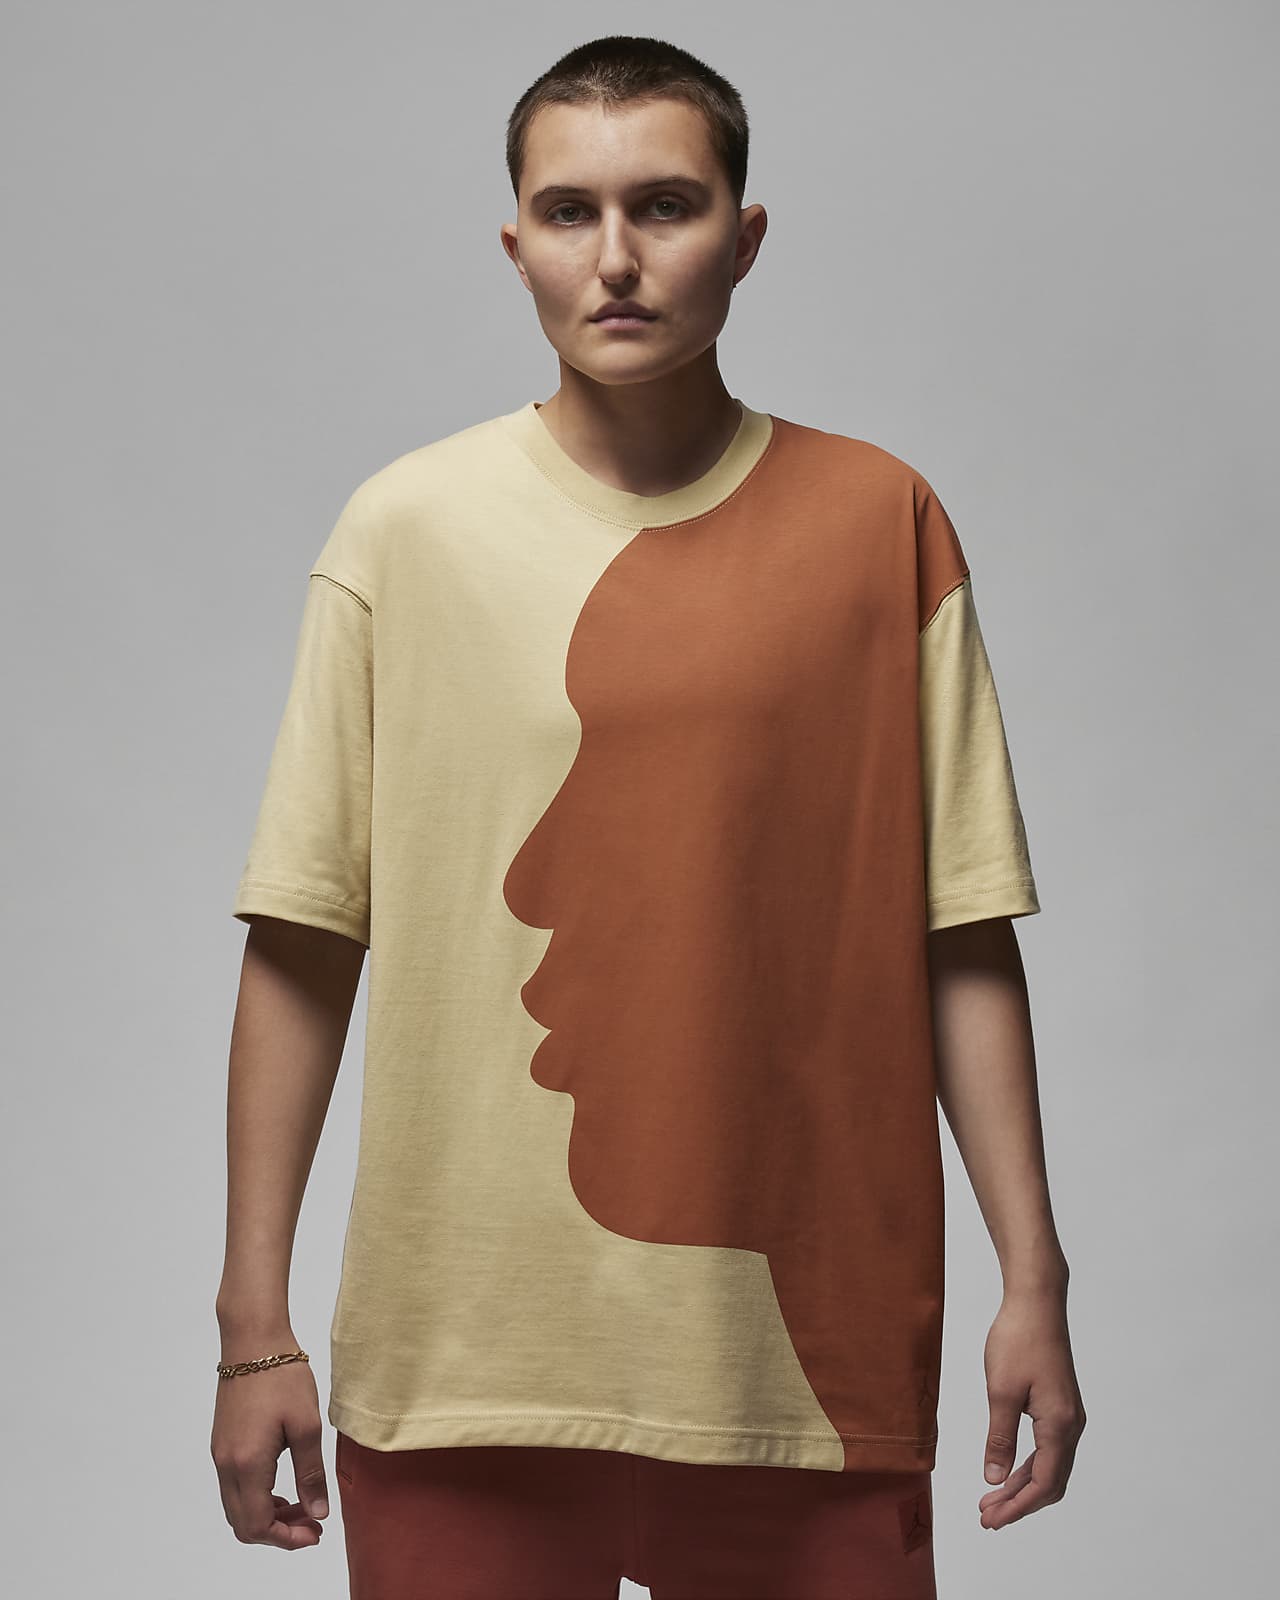 Jordan oversized T-shirt met graphic voor dames